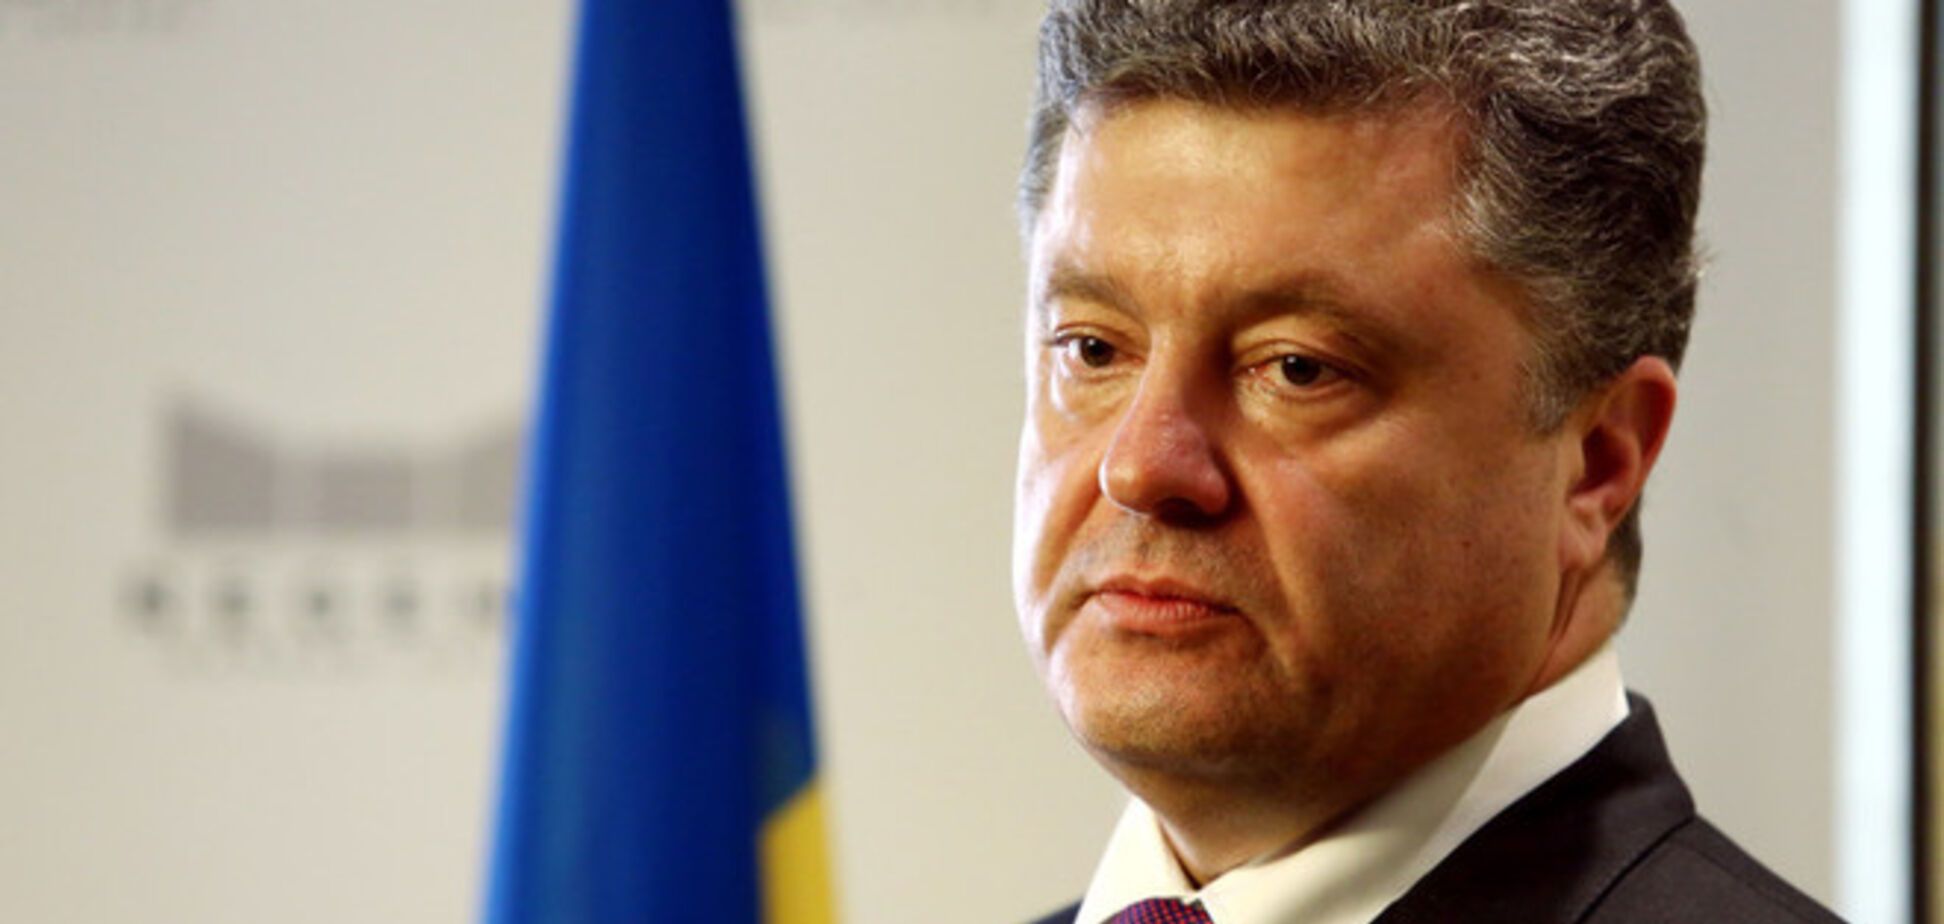 ООН обещает Порошенко партнерство в 'трудные для Украины времена'